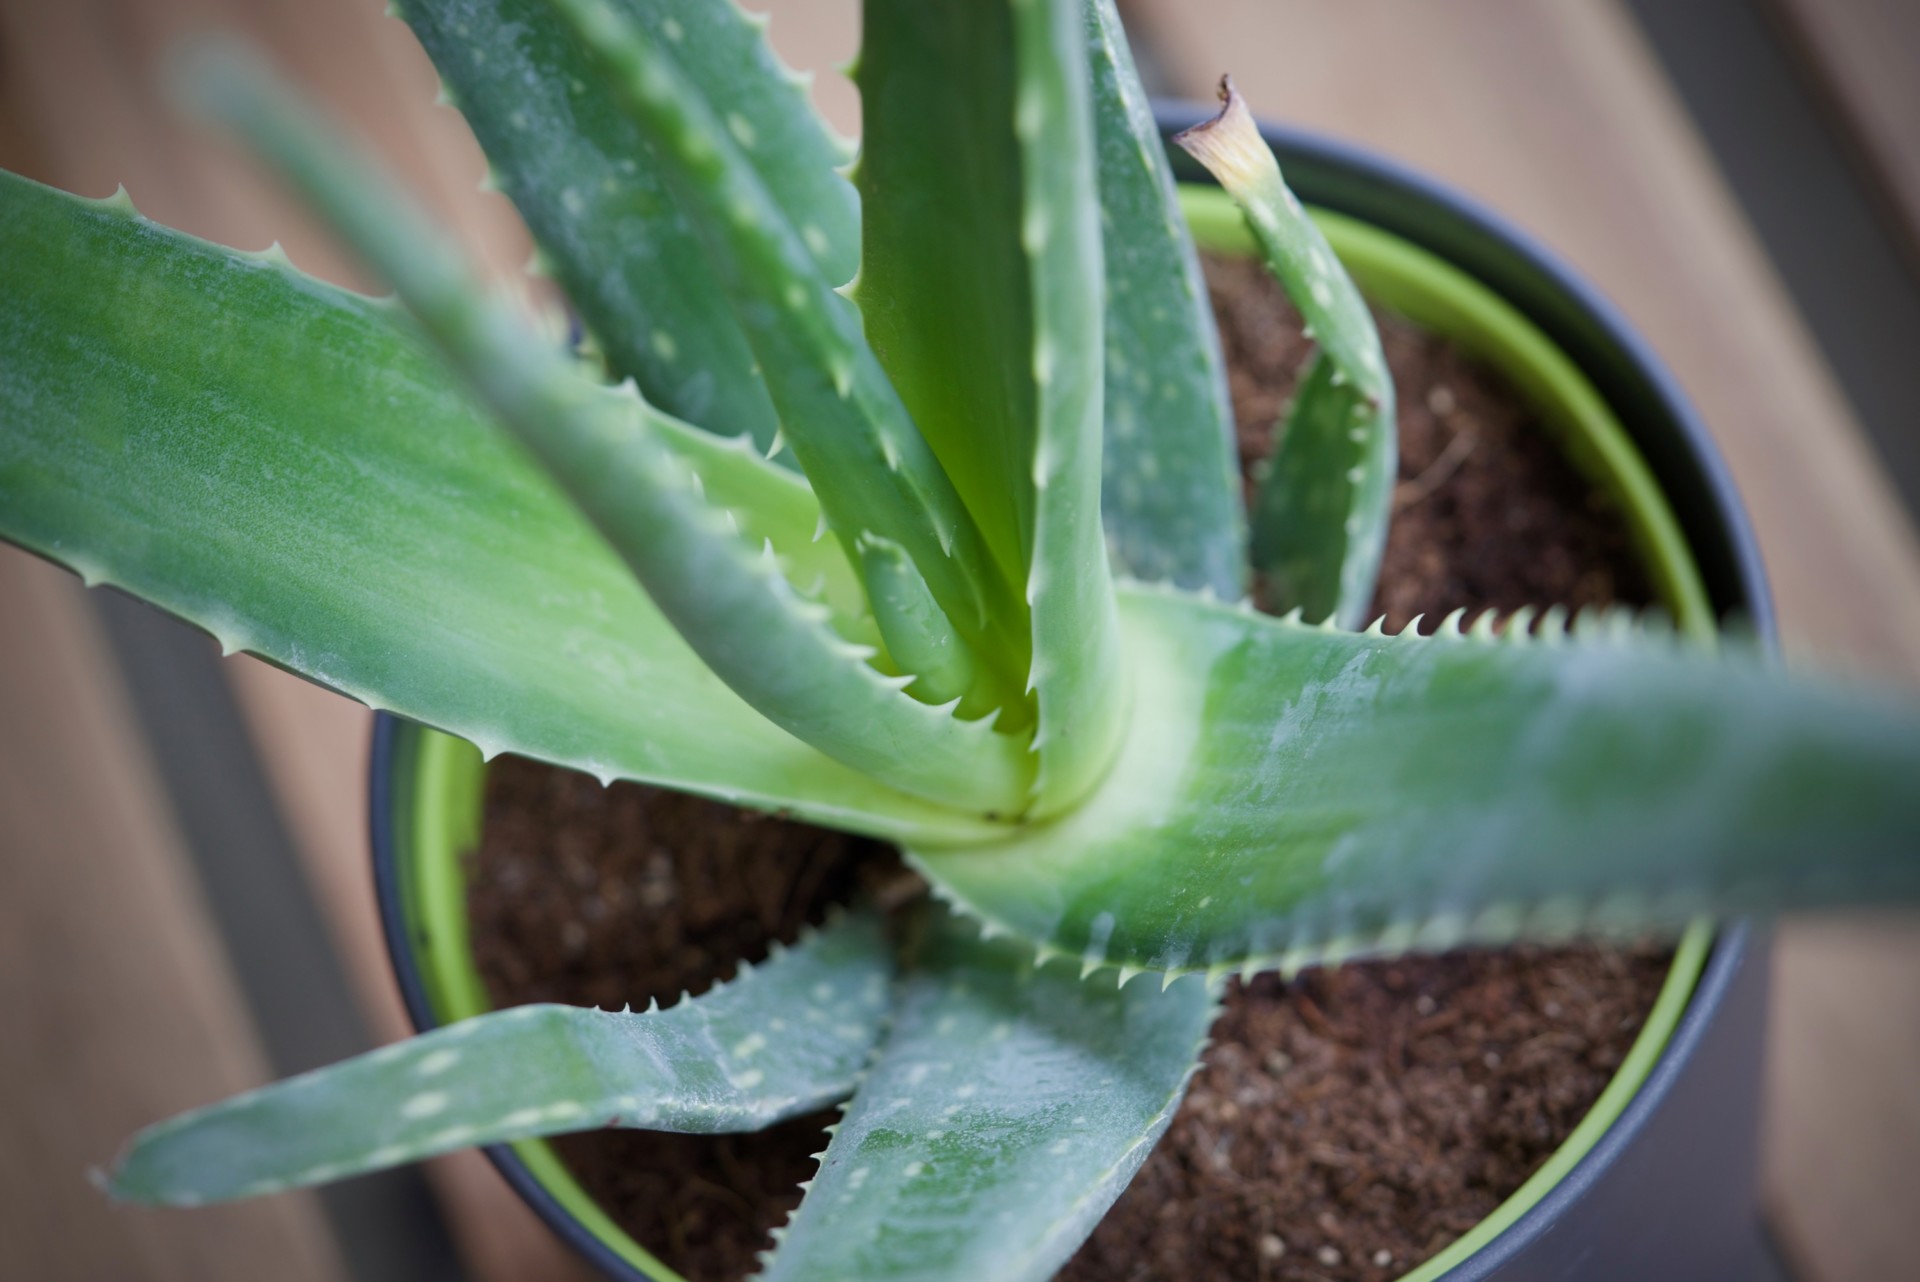 Les Aloe Vera mes nouvelles plantes favorites